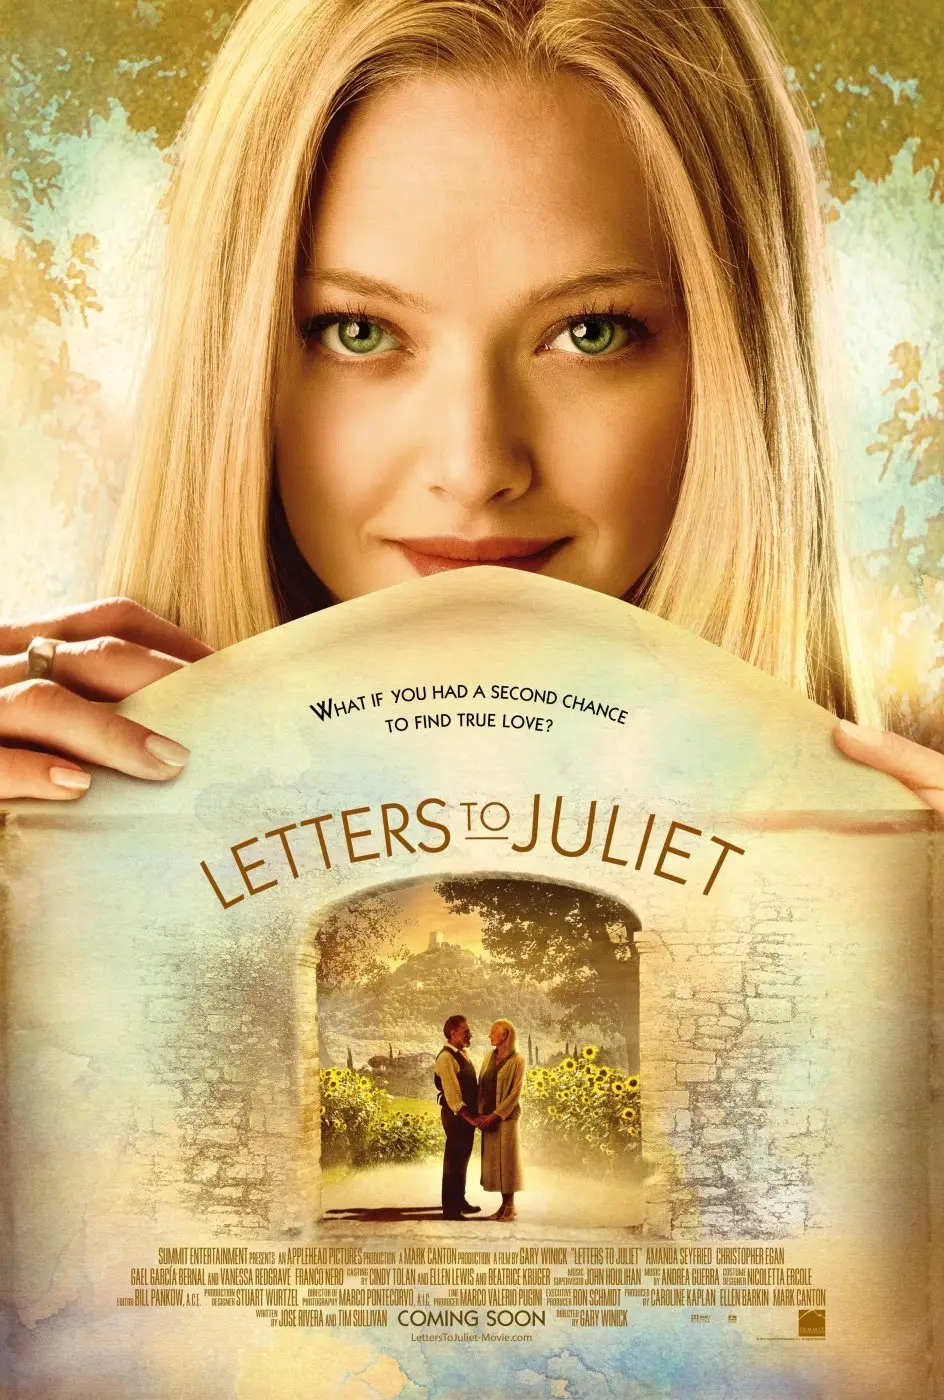 추억의 음악 여행&#44; 레터스 투 줄리엣(Letters to Juliet&#44; 2010) OST. Love Story - Taylor Swift